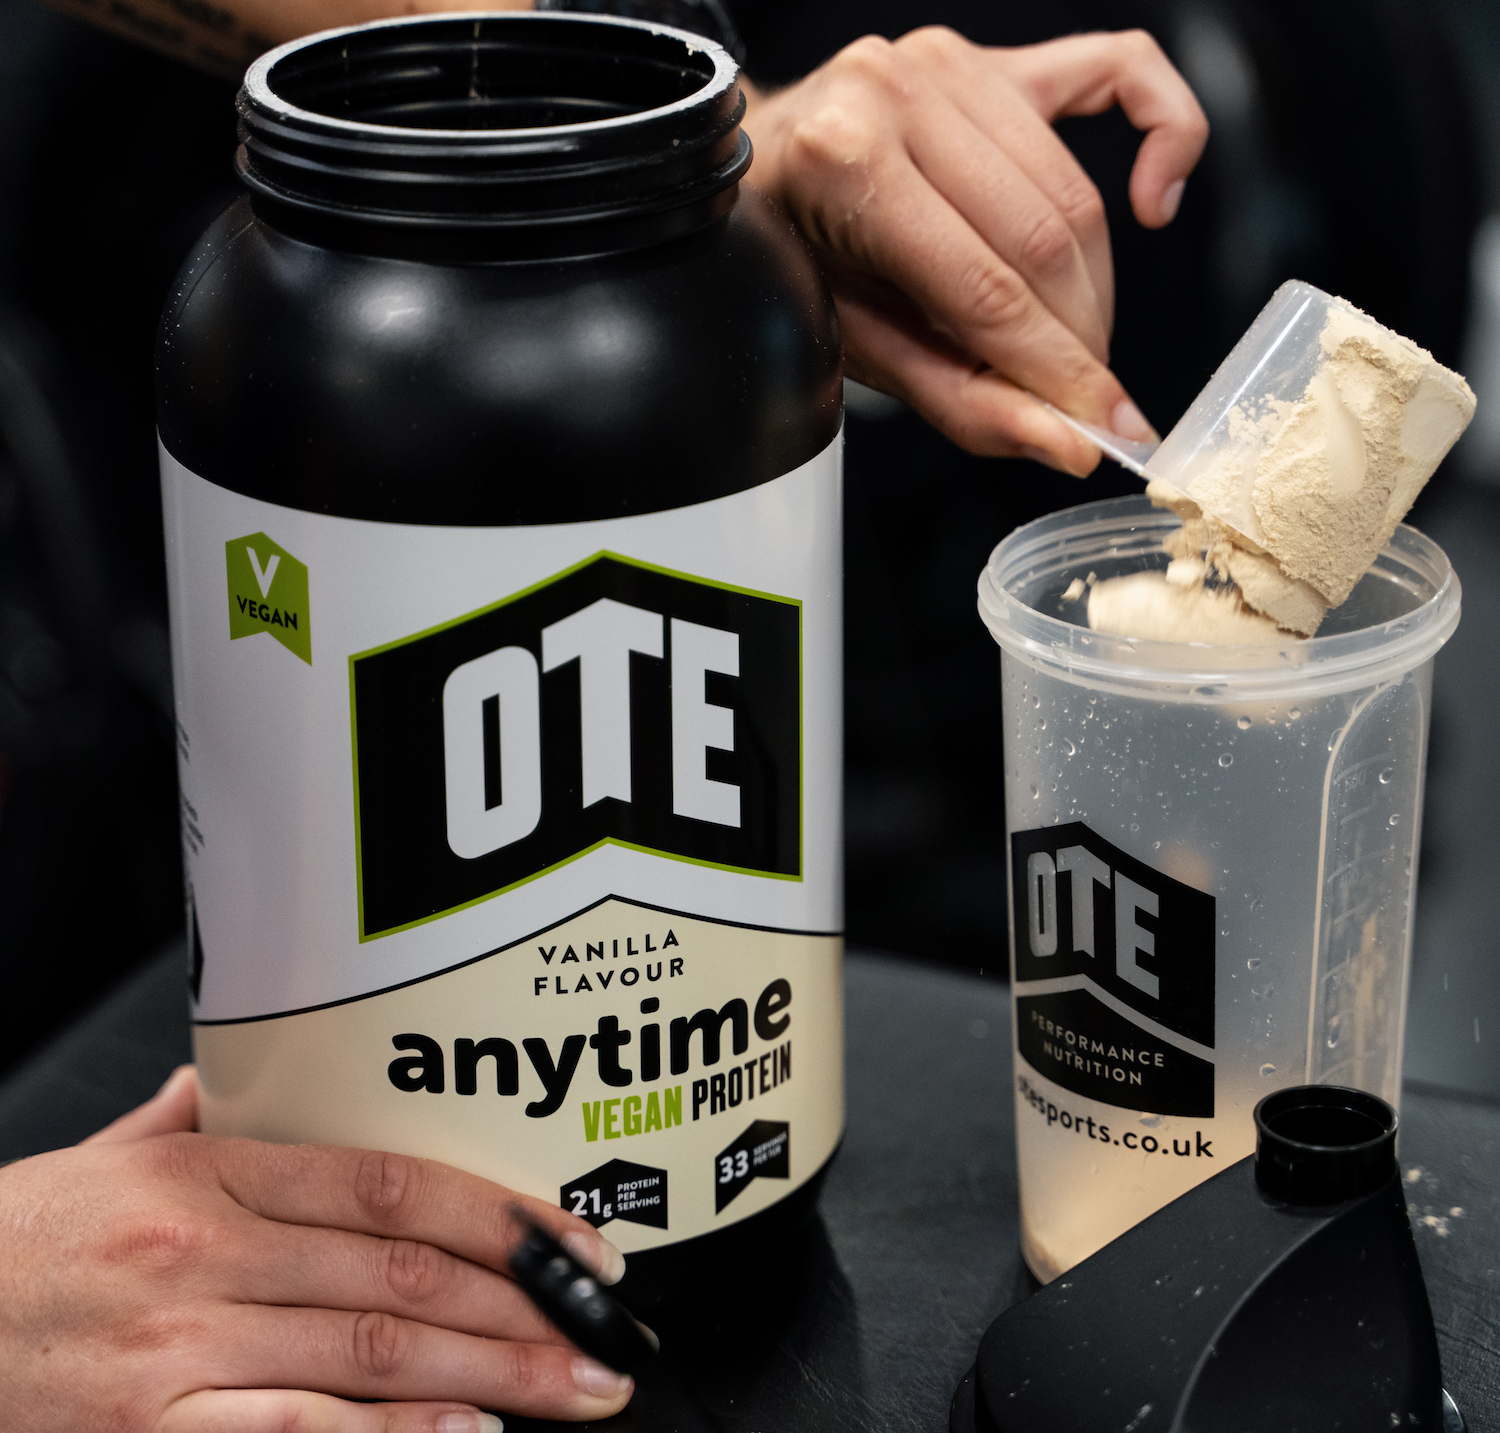 Vanilla Anytime Vegan Protein — OTE Sports